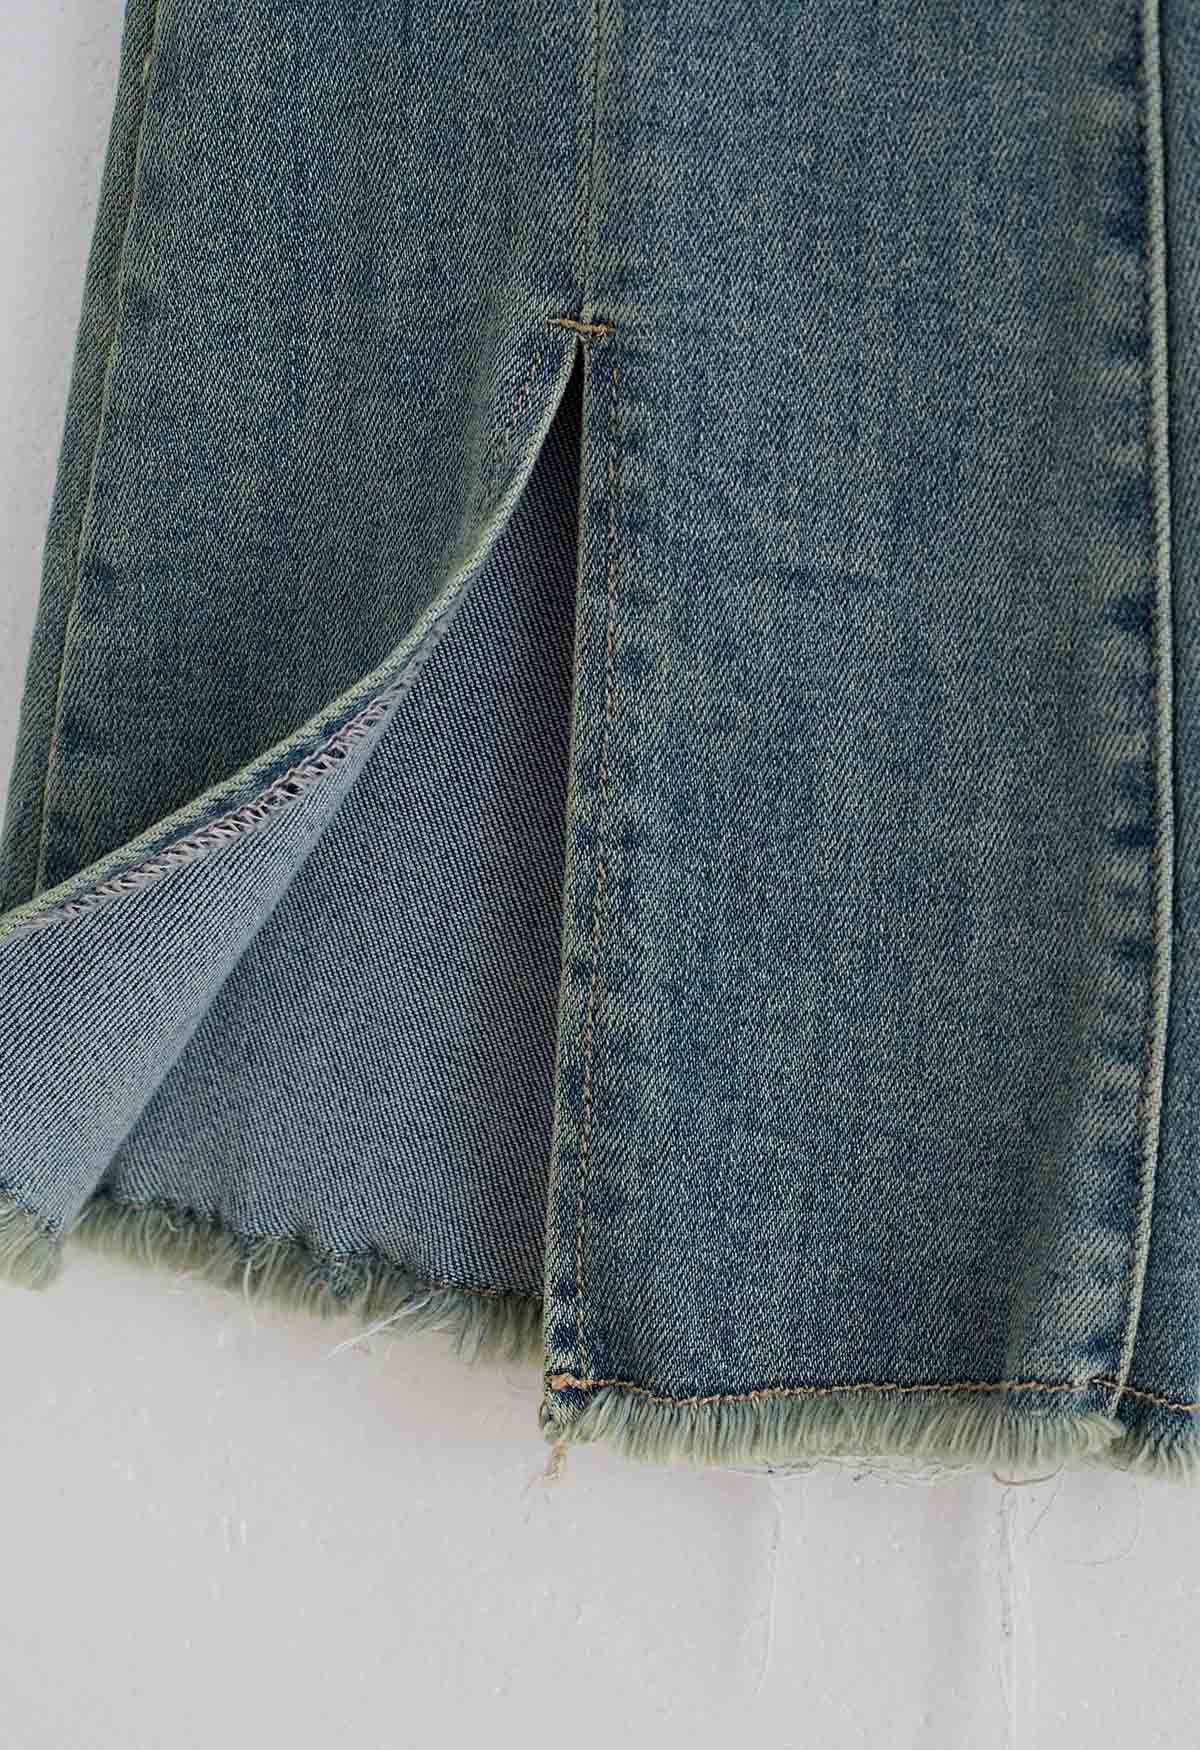 Welt Pocket Slit Frayed Hem Jeans - Retro, Indie and Unique Fashion